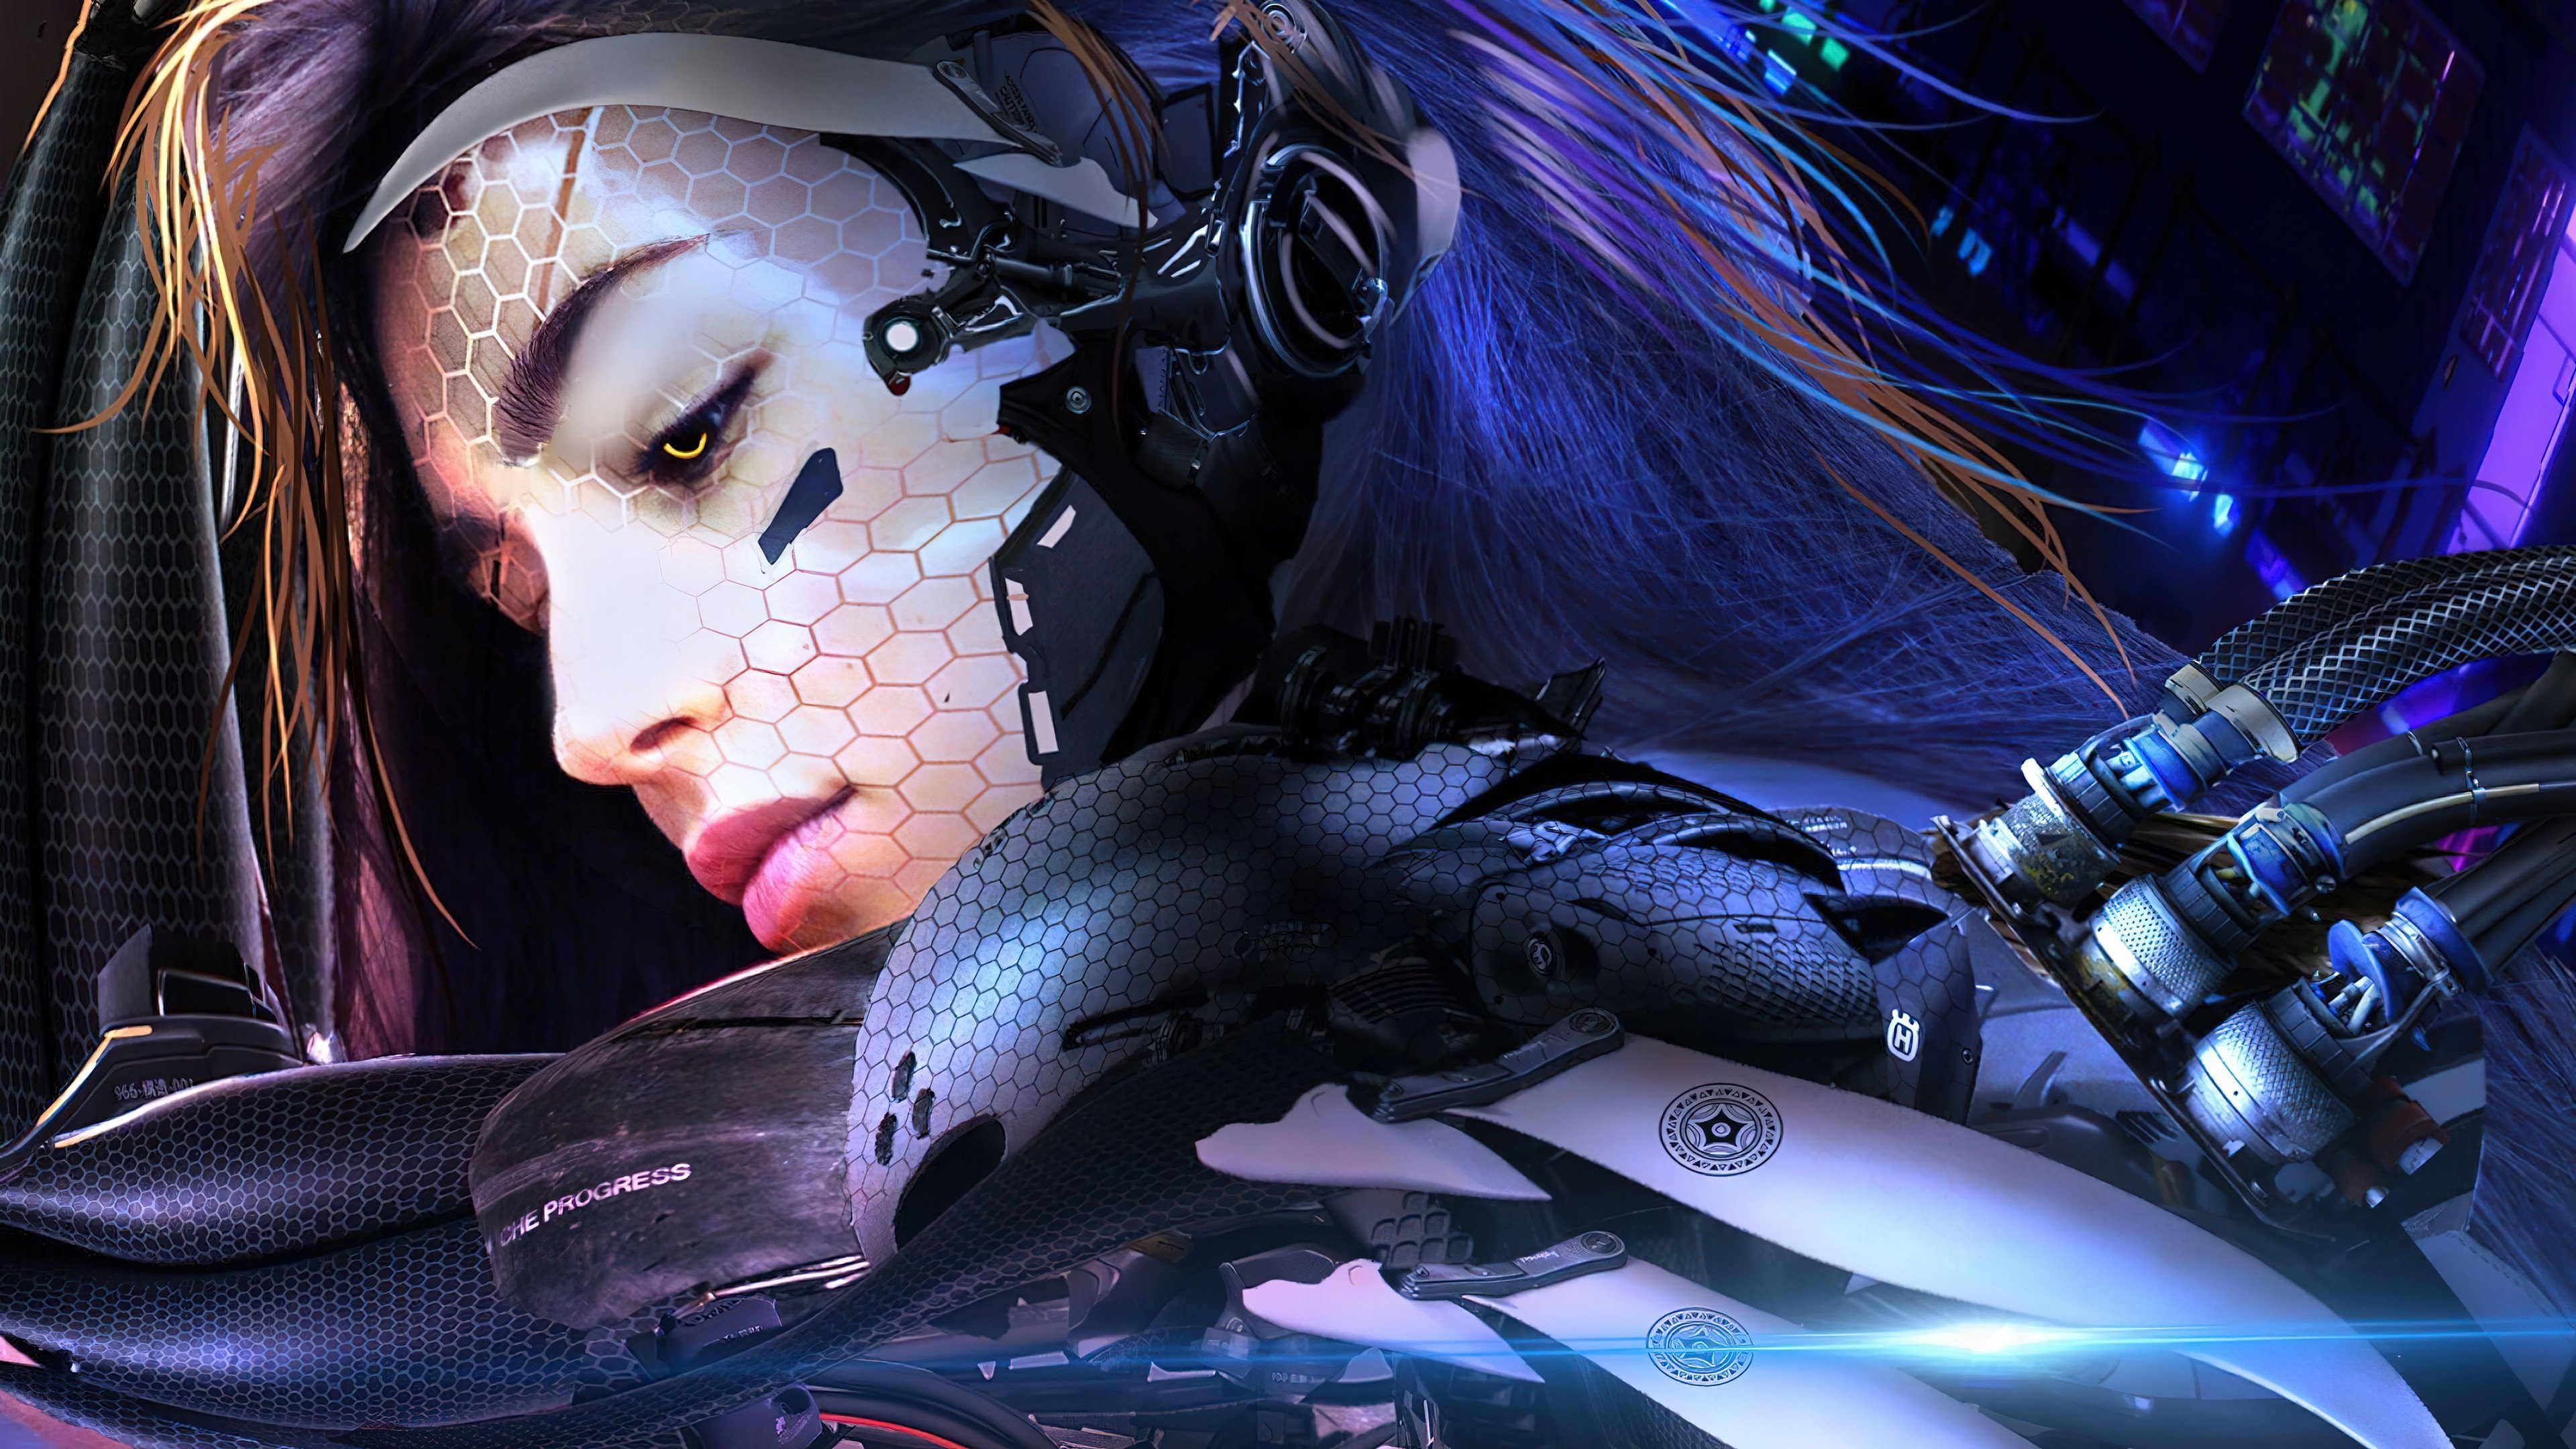 Cyberpunk woman wallpaper фото 3